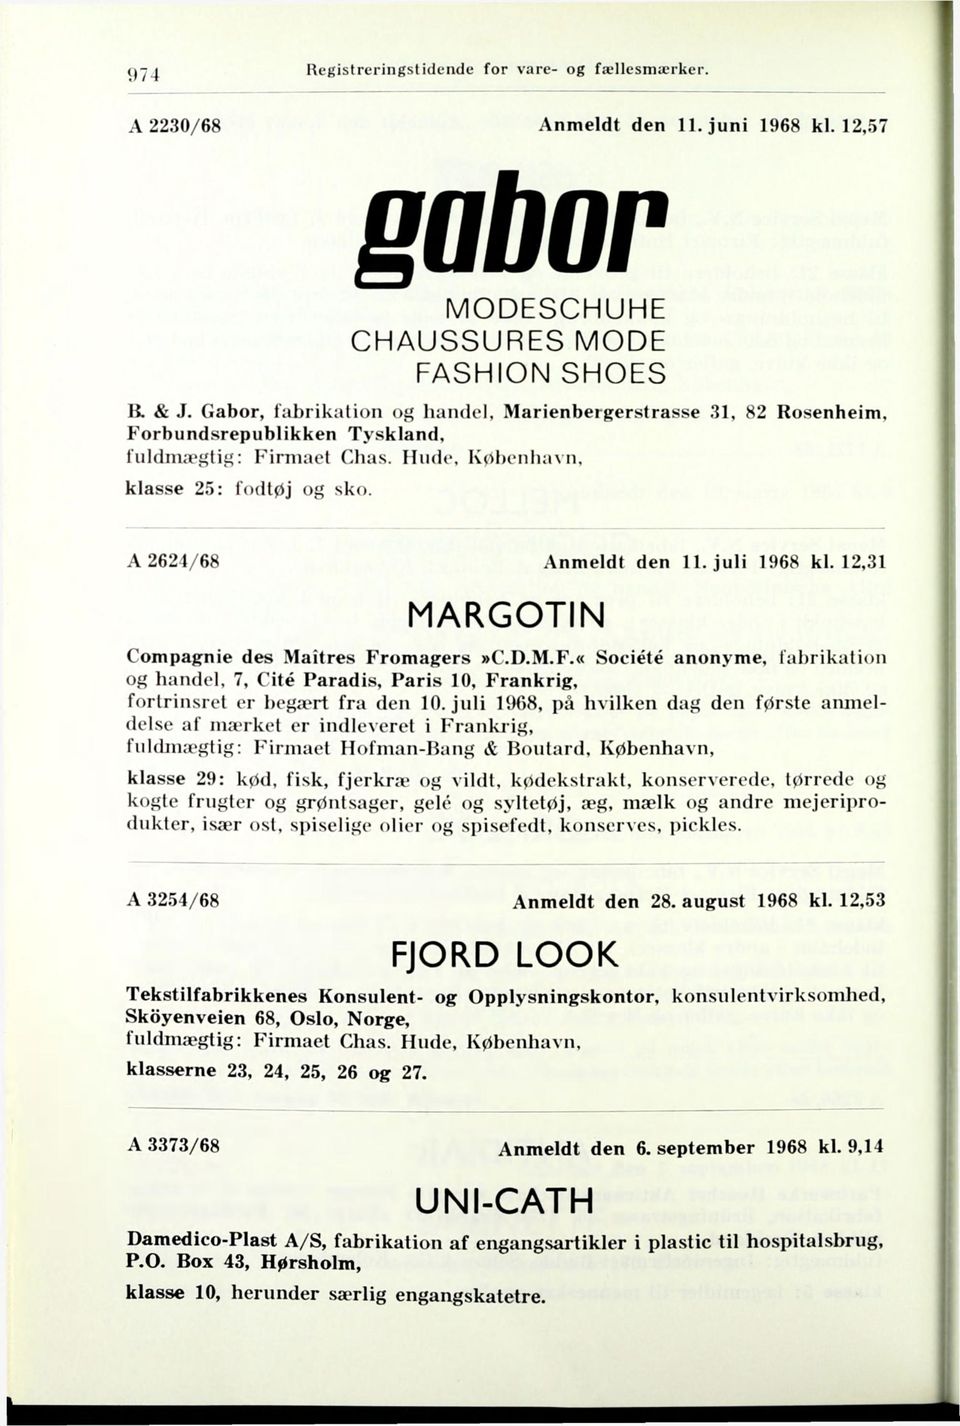 juli 1968 kl. 12,31 MARGOTIN Compagnie des Maitres Fromagers»C.D.M.F.«Société anonyme, fabrikation og handel, 7, Cité Paradis, Paris 10, Frankrig, fortrinsret er bega^rt fra den 10.